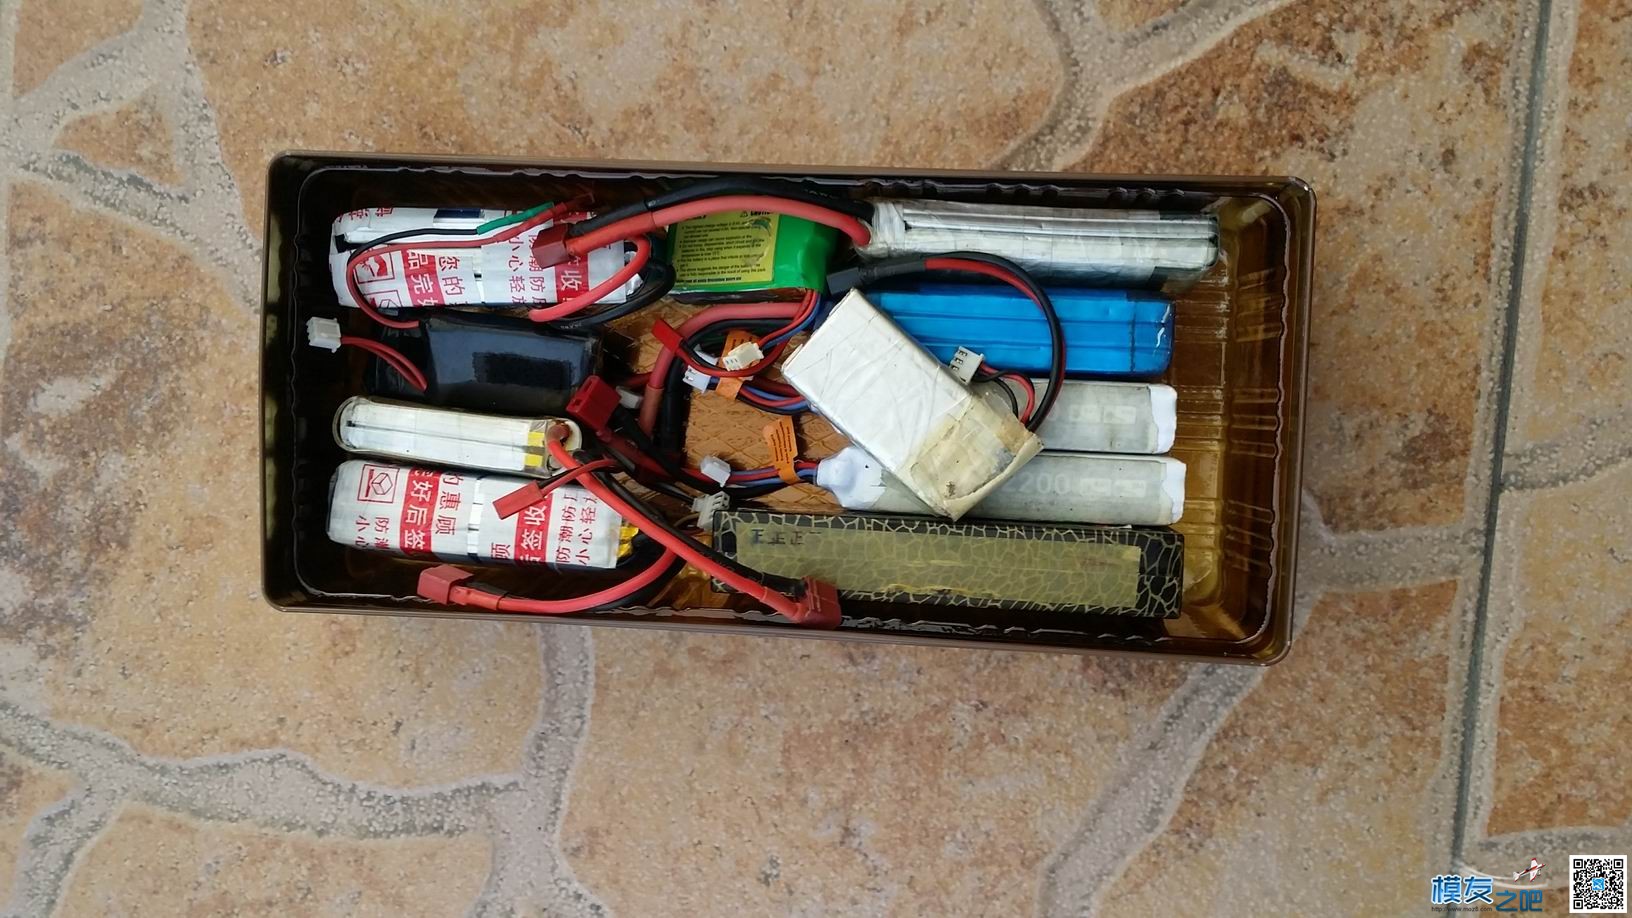 废料DIY锂电池箱 电池 作者:抓螃蟹的猫 3046 